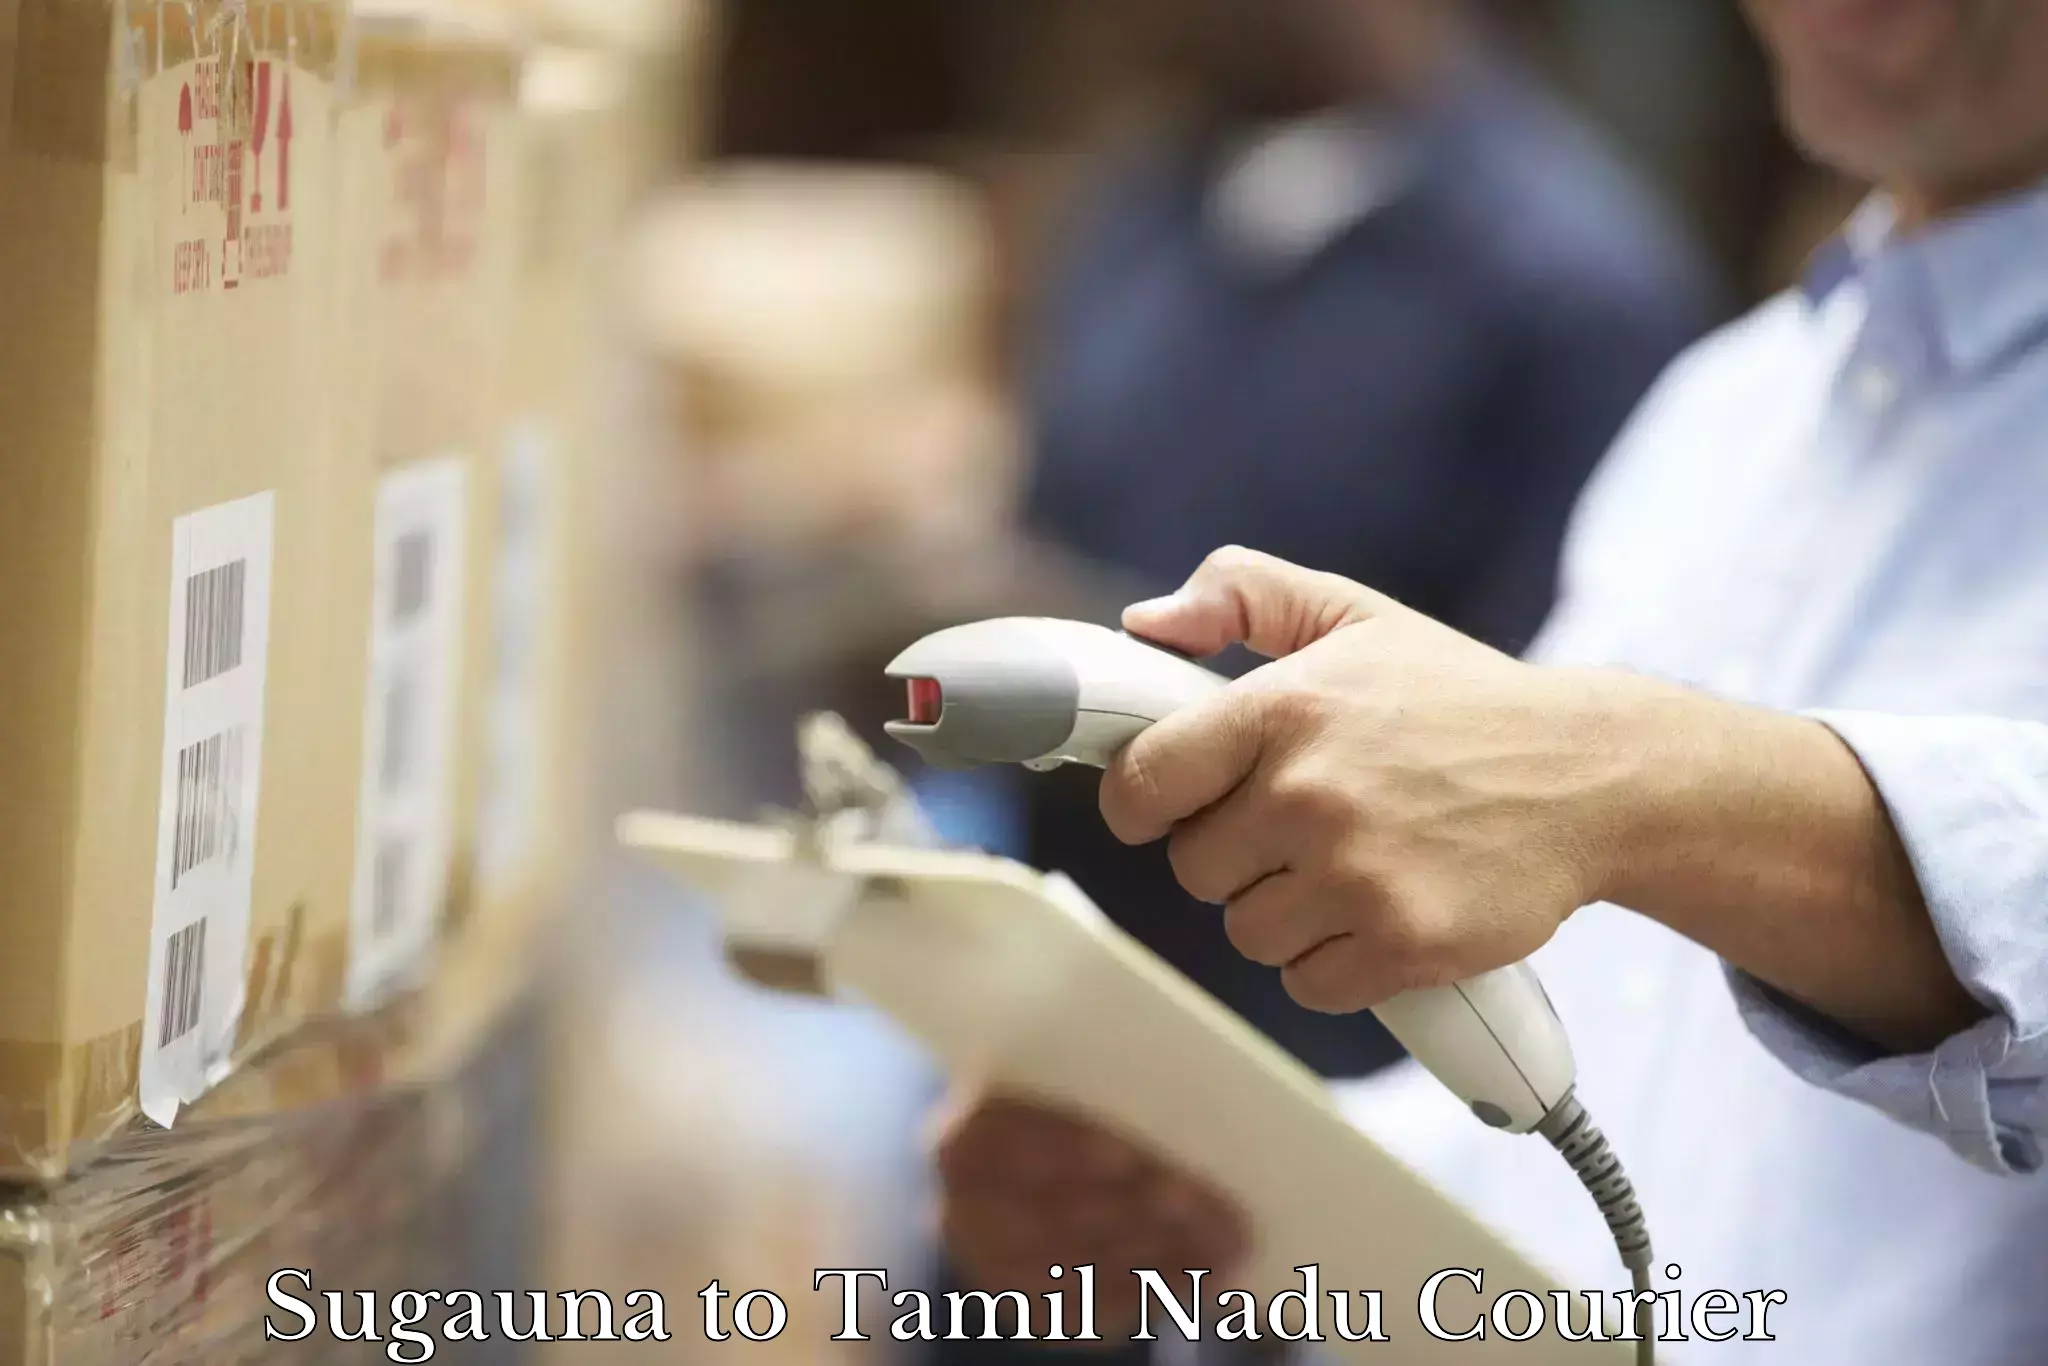 Global logistics network Sugauna to Villupuram